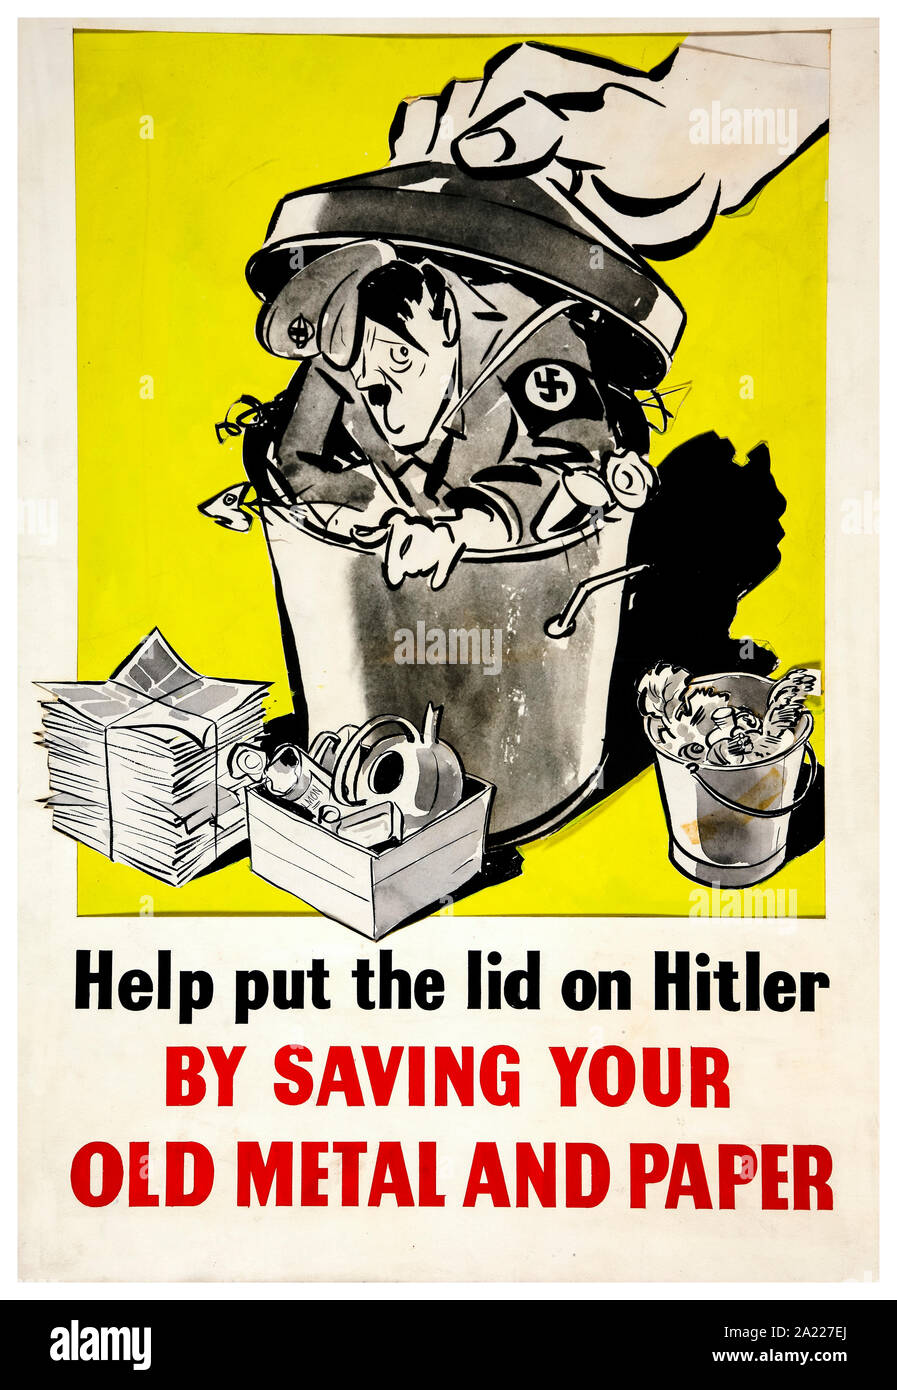 British, WW2, de sauvetage, d'aider à mettre le couvercle sur Hitler en sauvegardant votre vieux métal et papier (Hitler figure dans poubelle), affiche, 1939-1946 Banque D'Images